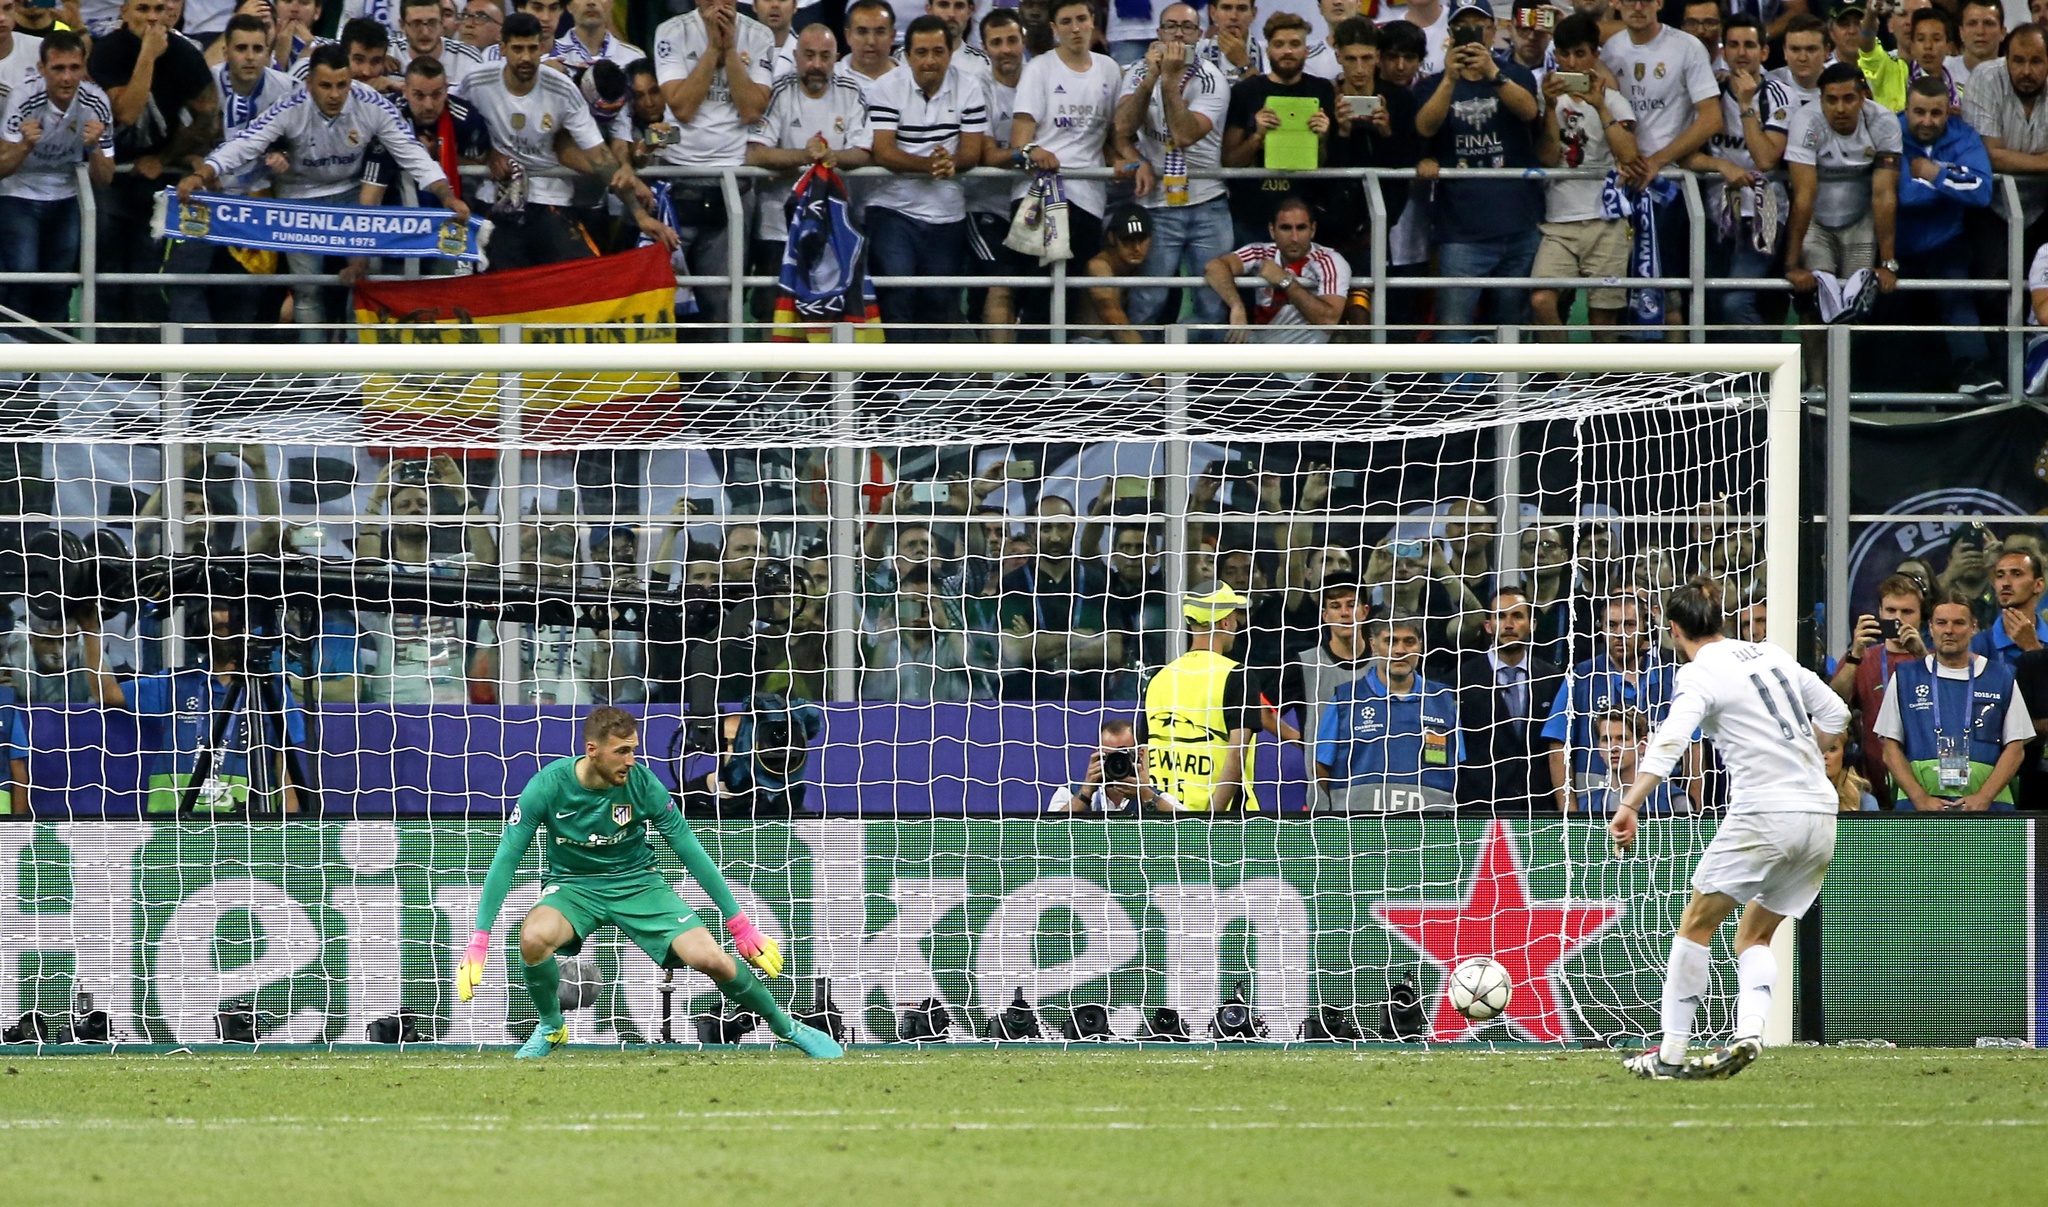 Bale lanzando y anotando el penalti ante Oblak en la Final de la Champions 2016